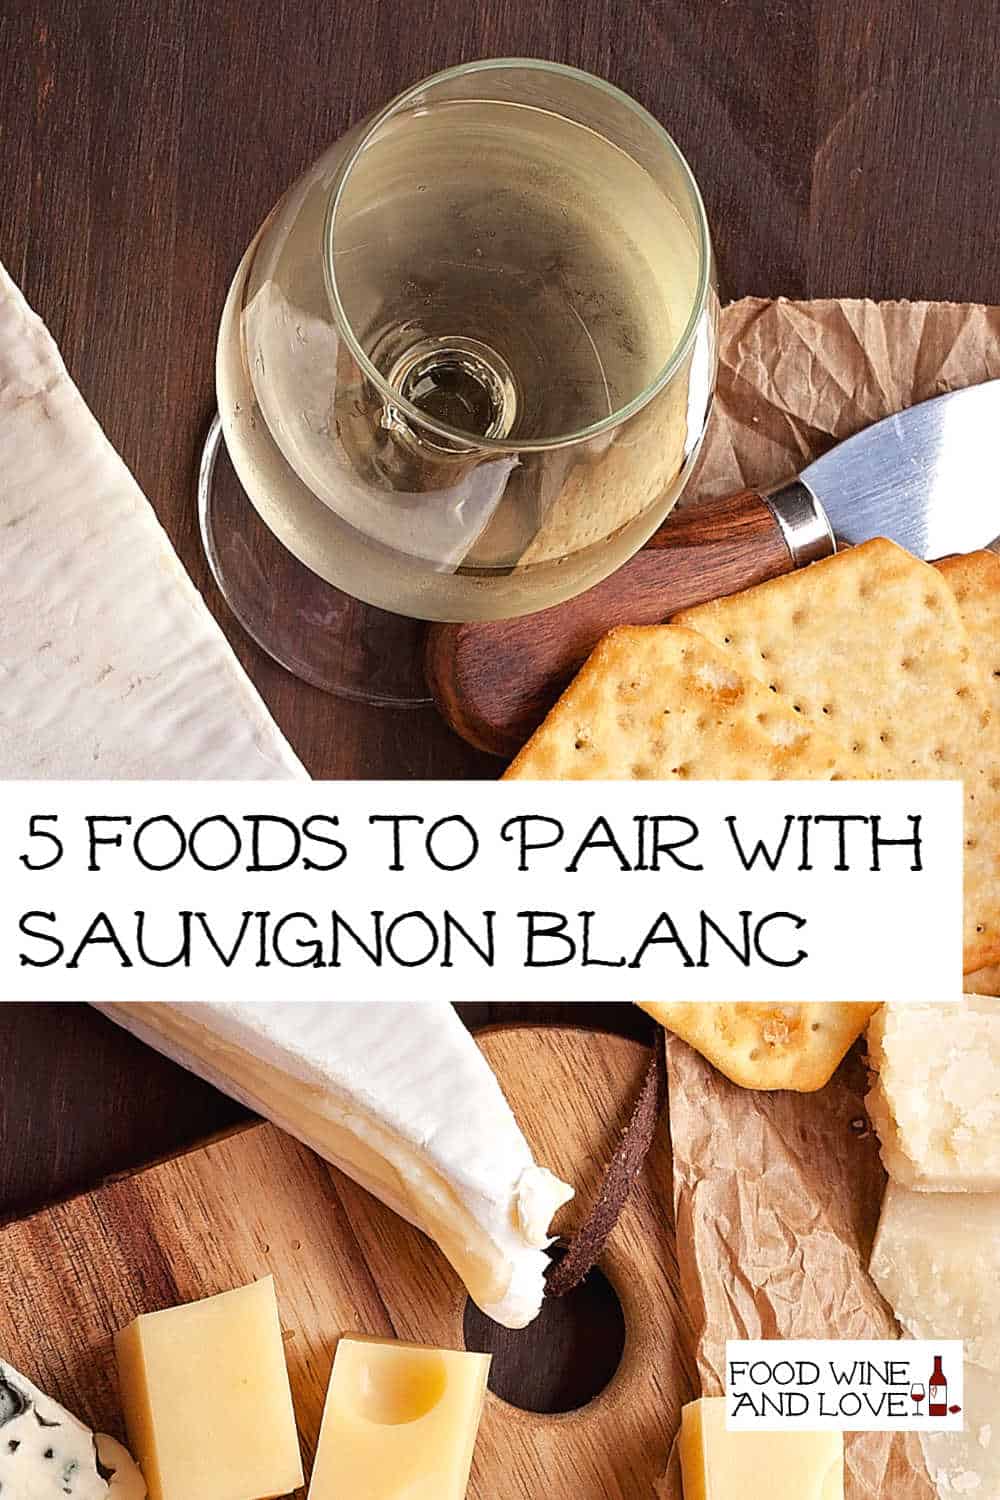 5 Foods to Pair With Sauvignon Blanc